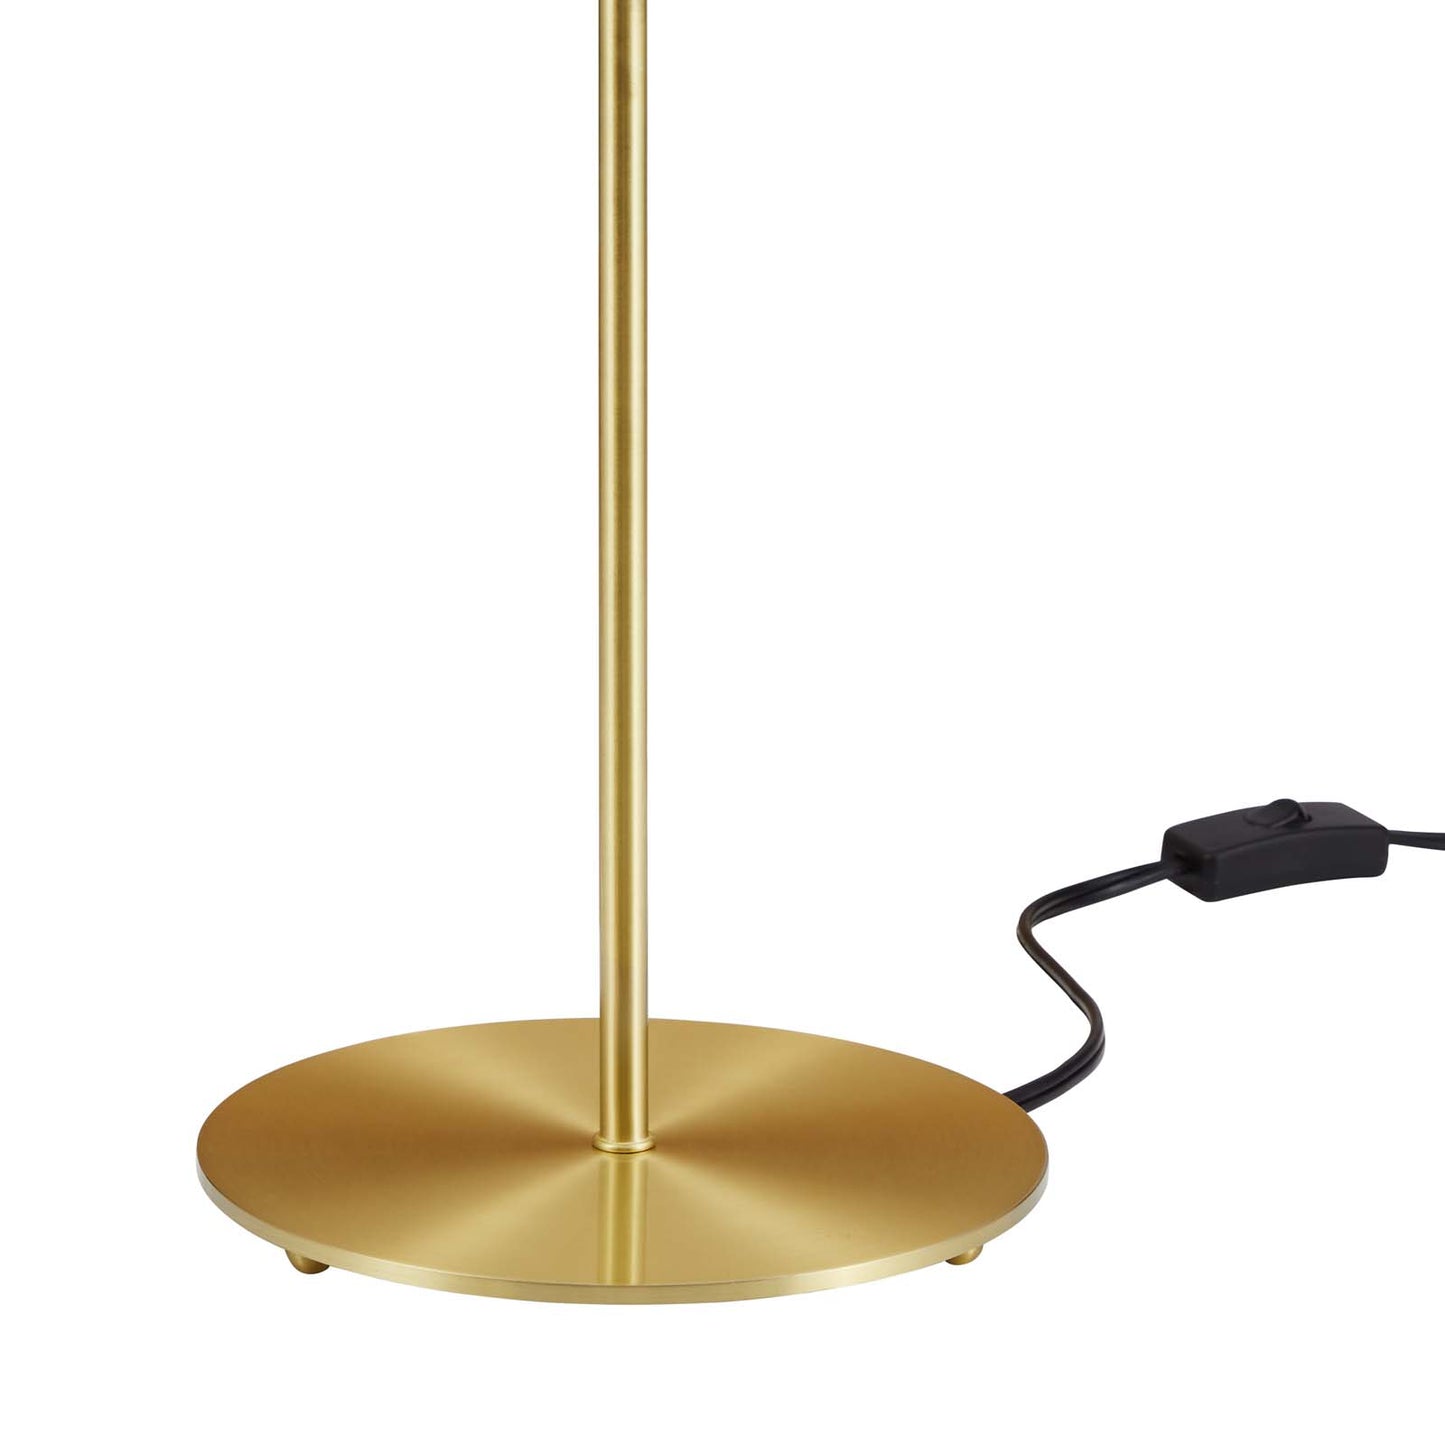 Ideal Metal Table Lamp Pink Satin Brass EEI-5629-PNK-SBR